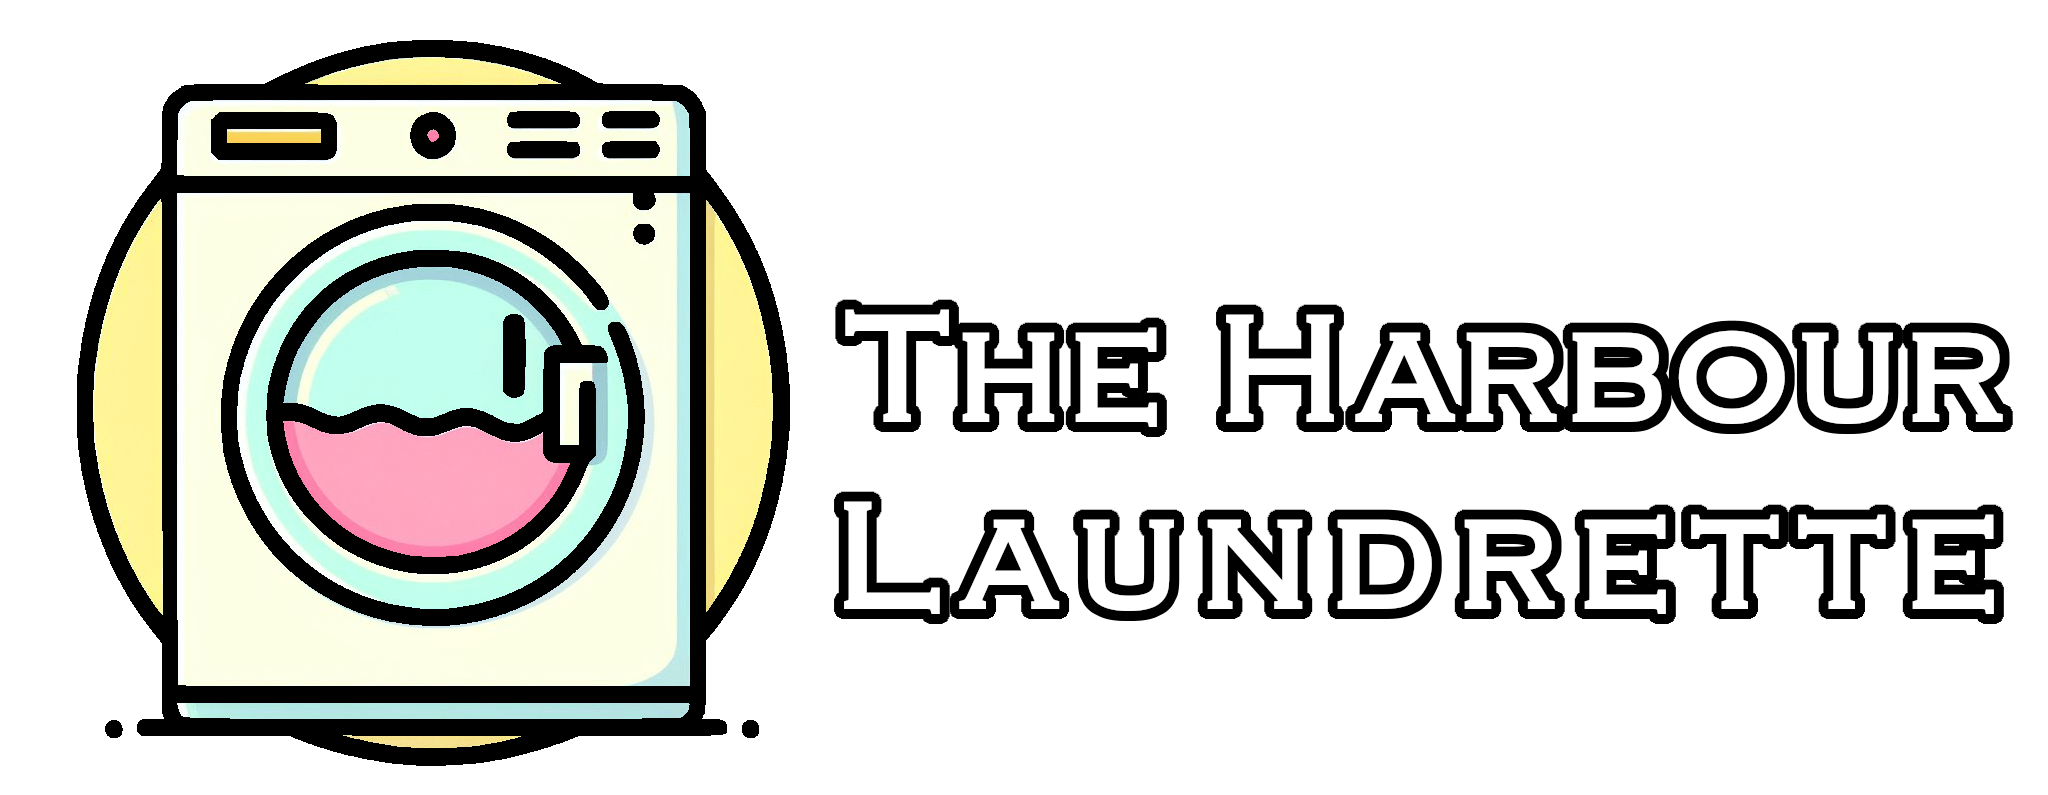 The Harbour Laundrette | Shellharbour Laundromat